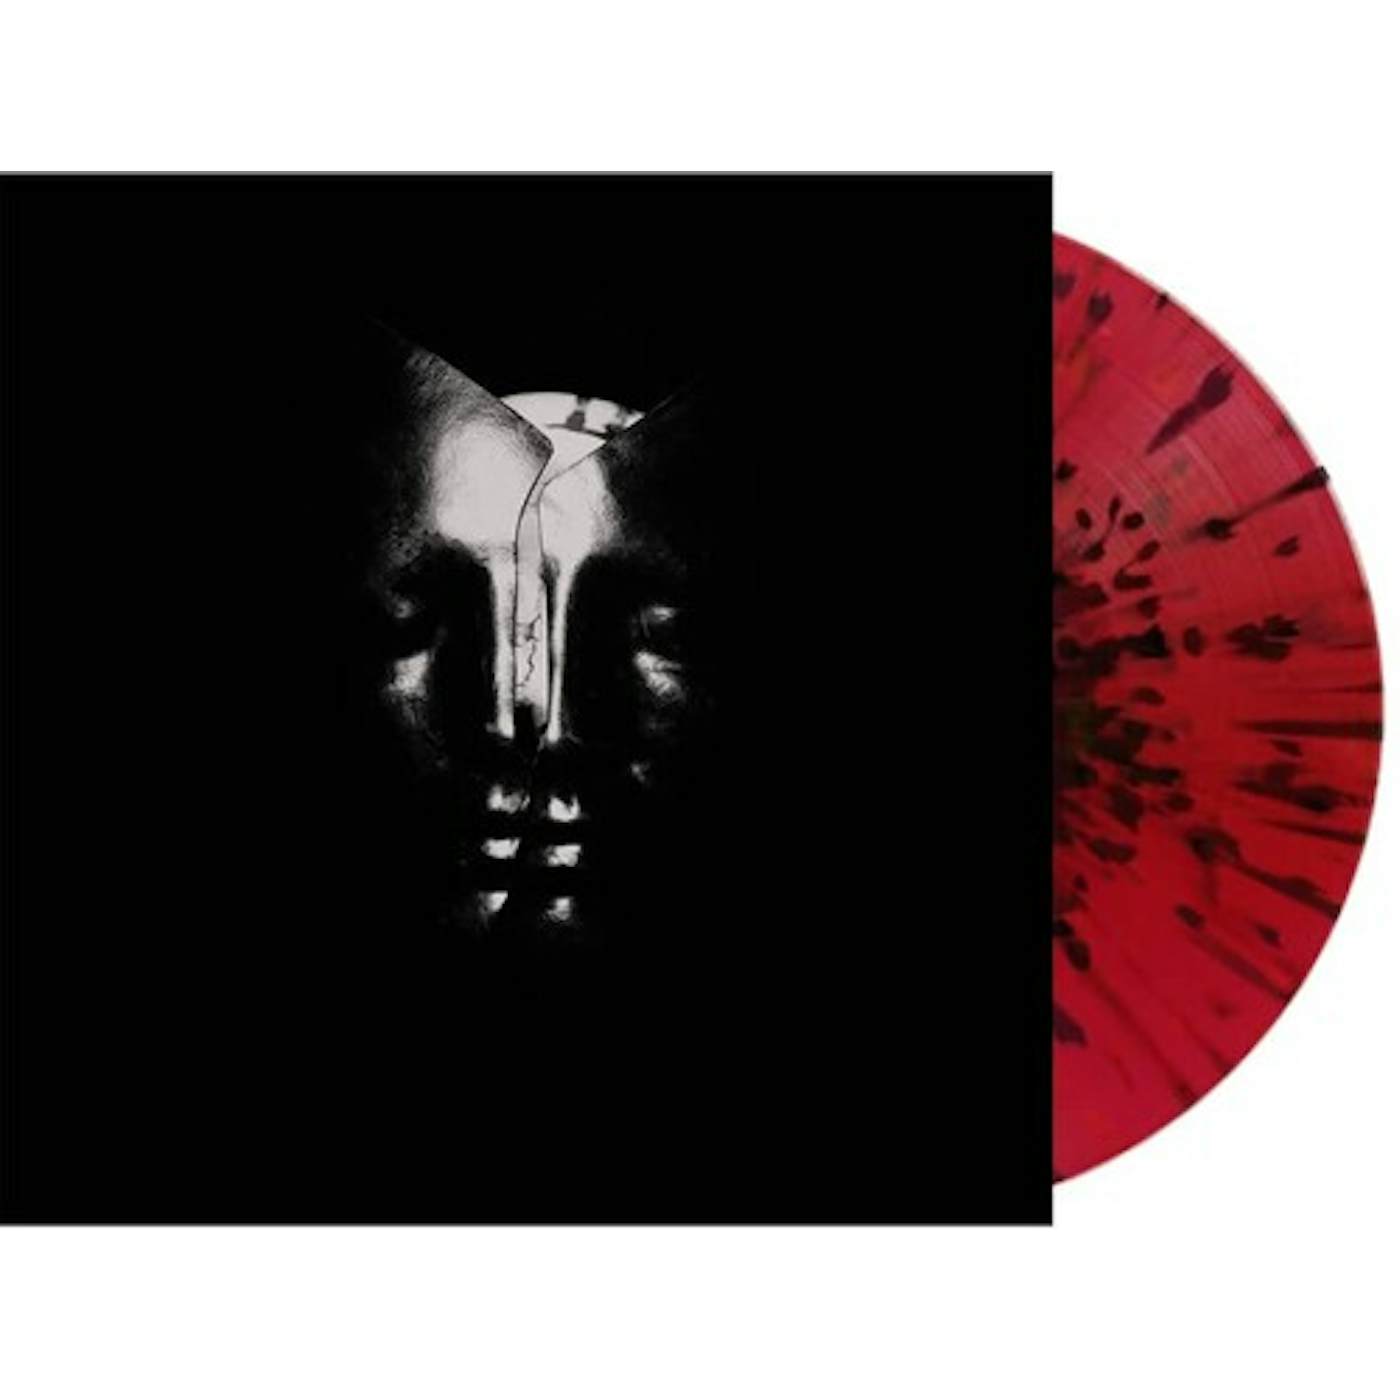  Bullet for My Valentine (Deluxe Red/Black Splatter 2LP) Vinyl Record